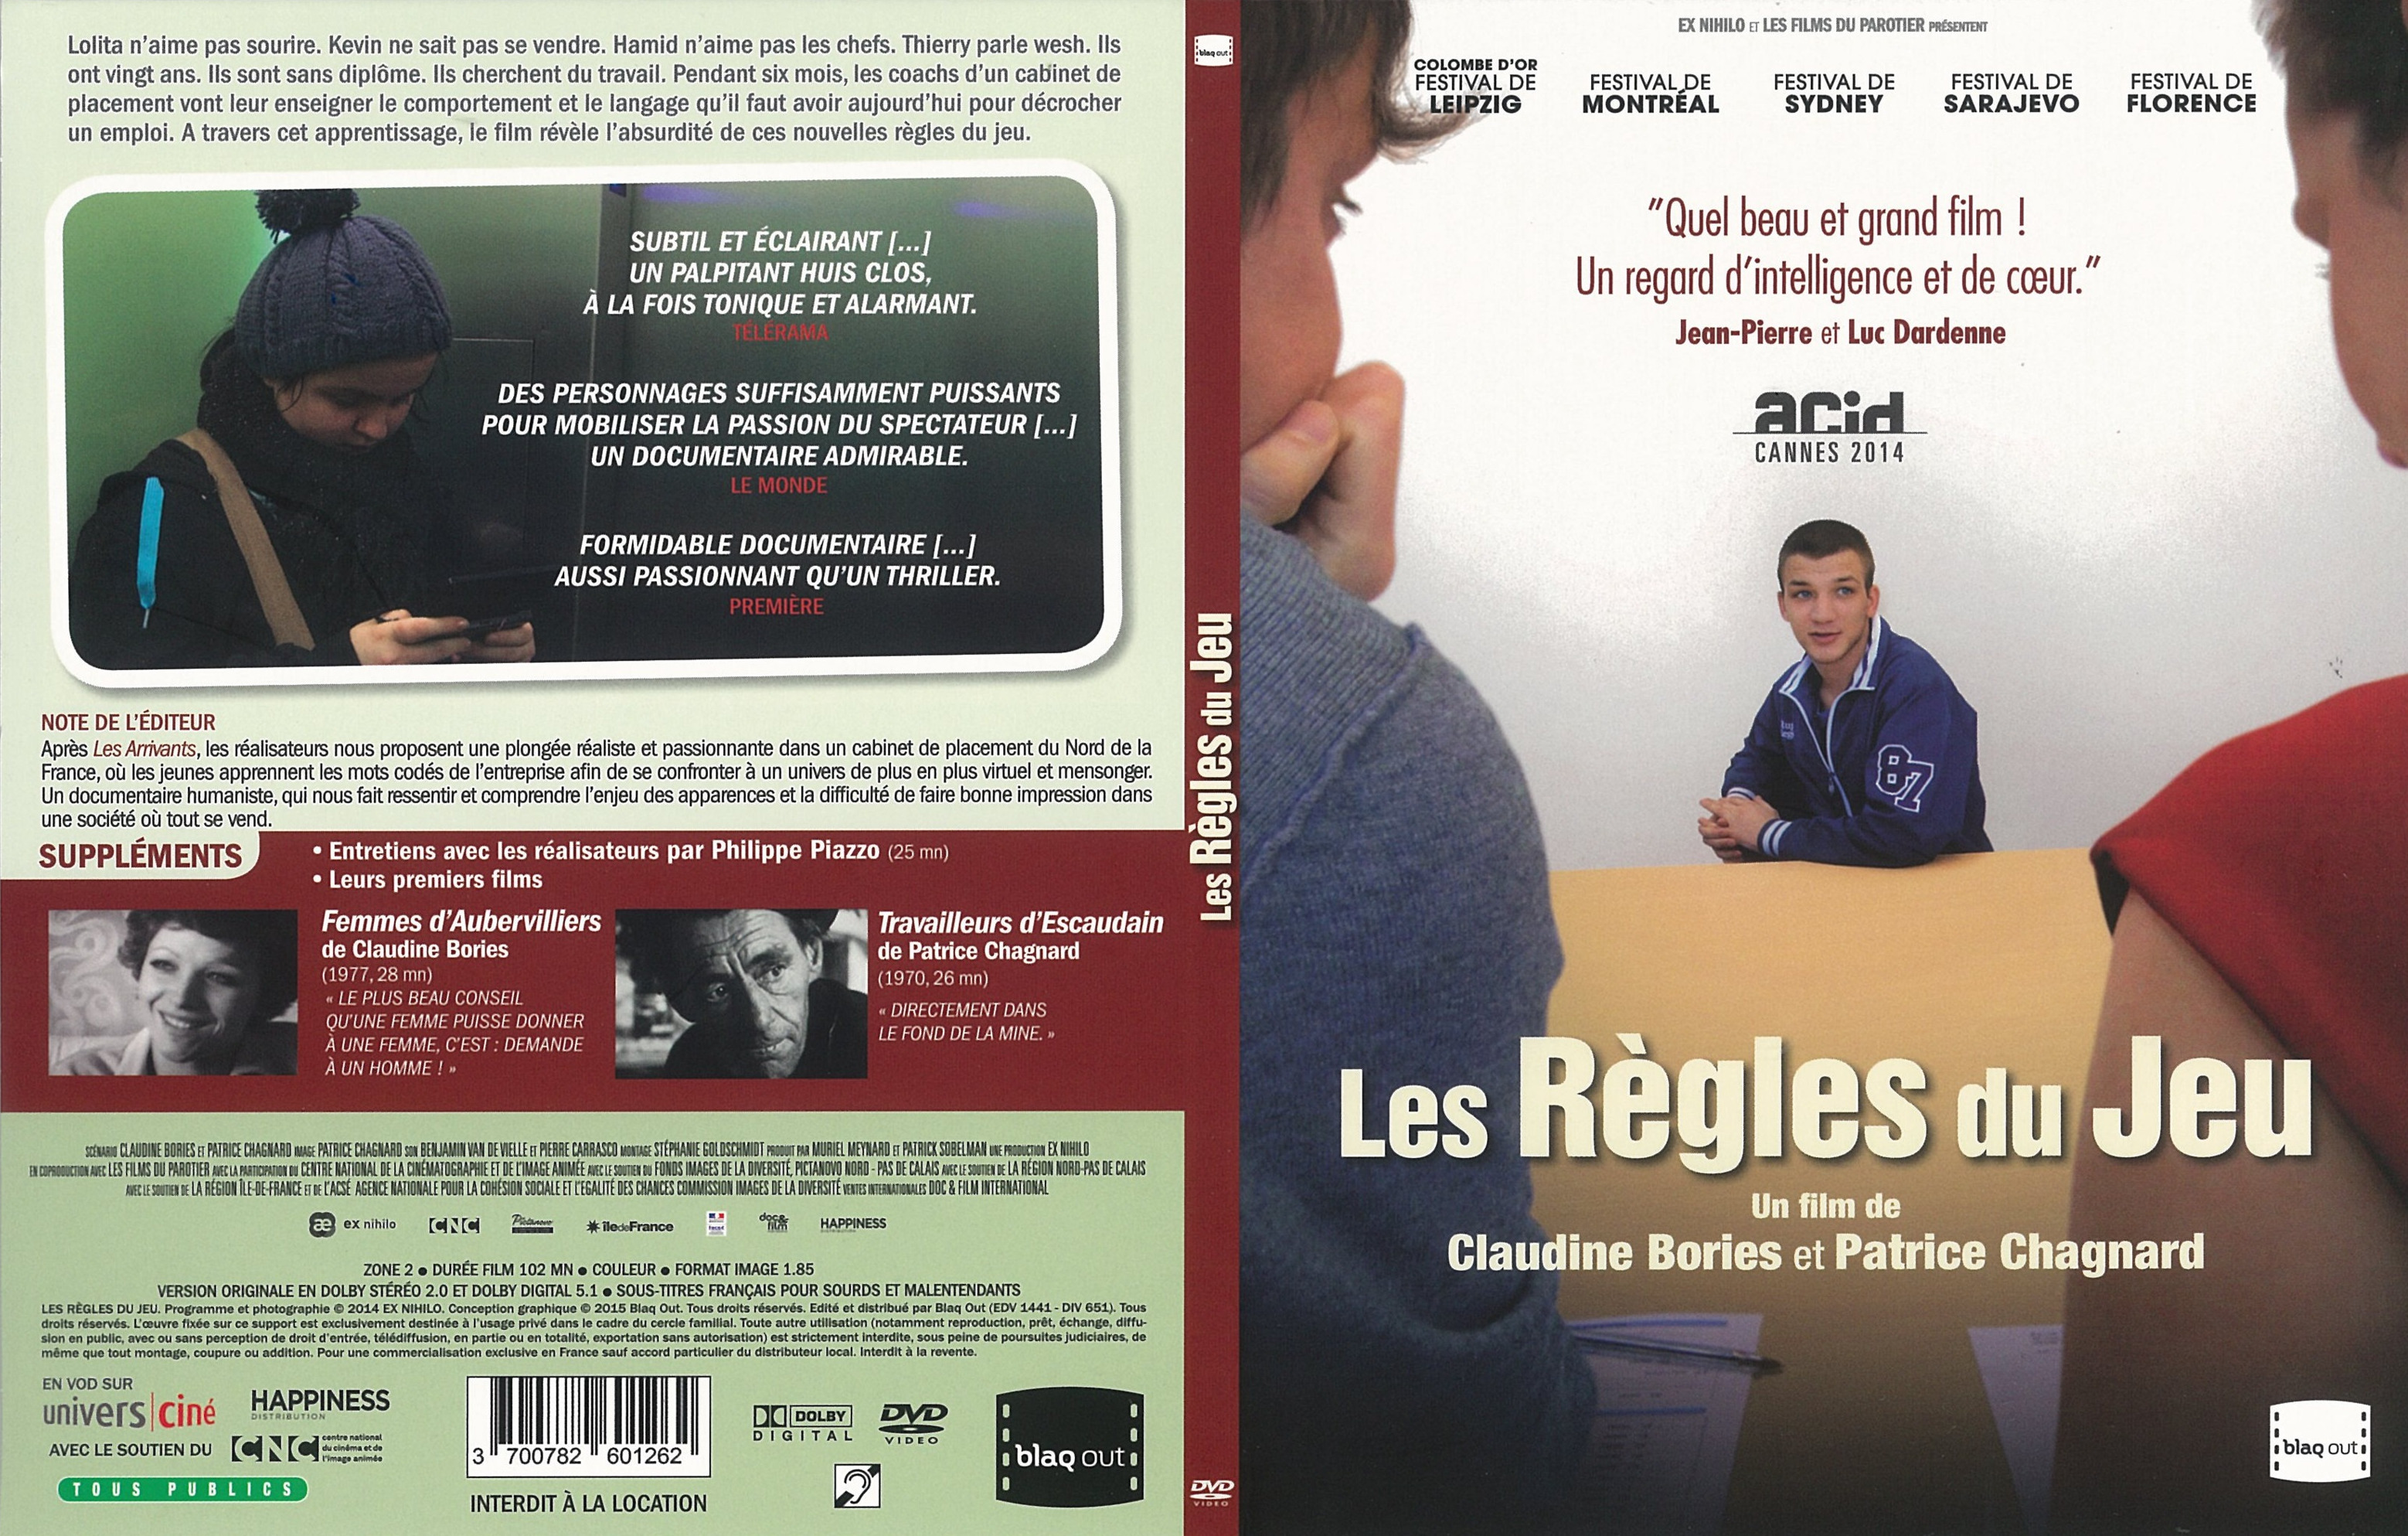 Jaquette DVD  Les Rgles du jeu